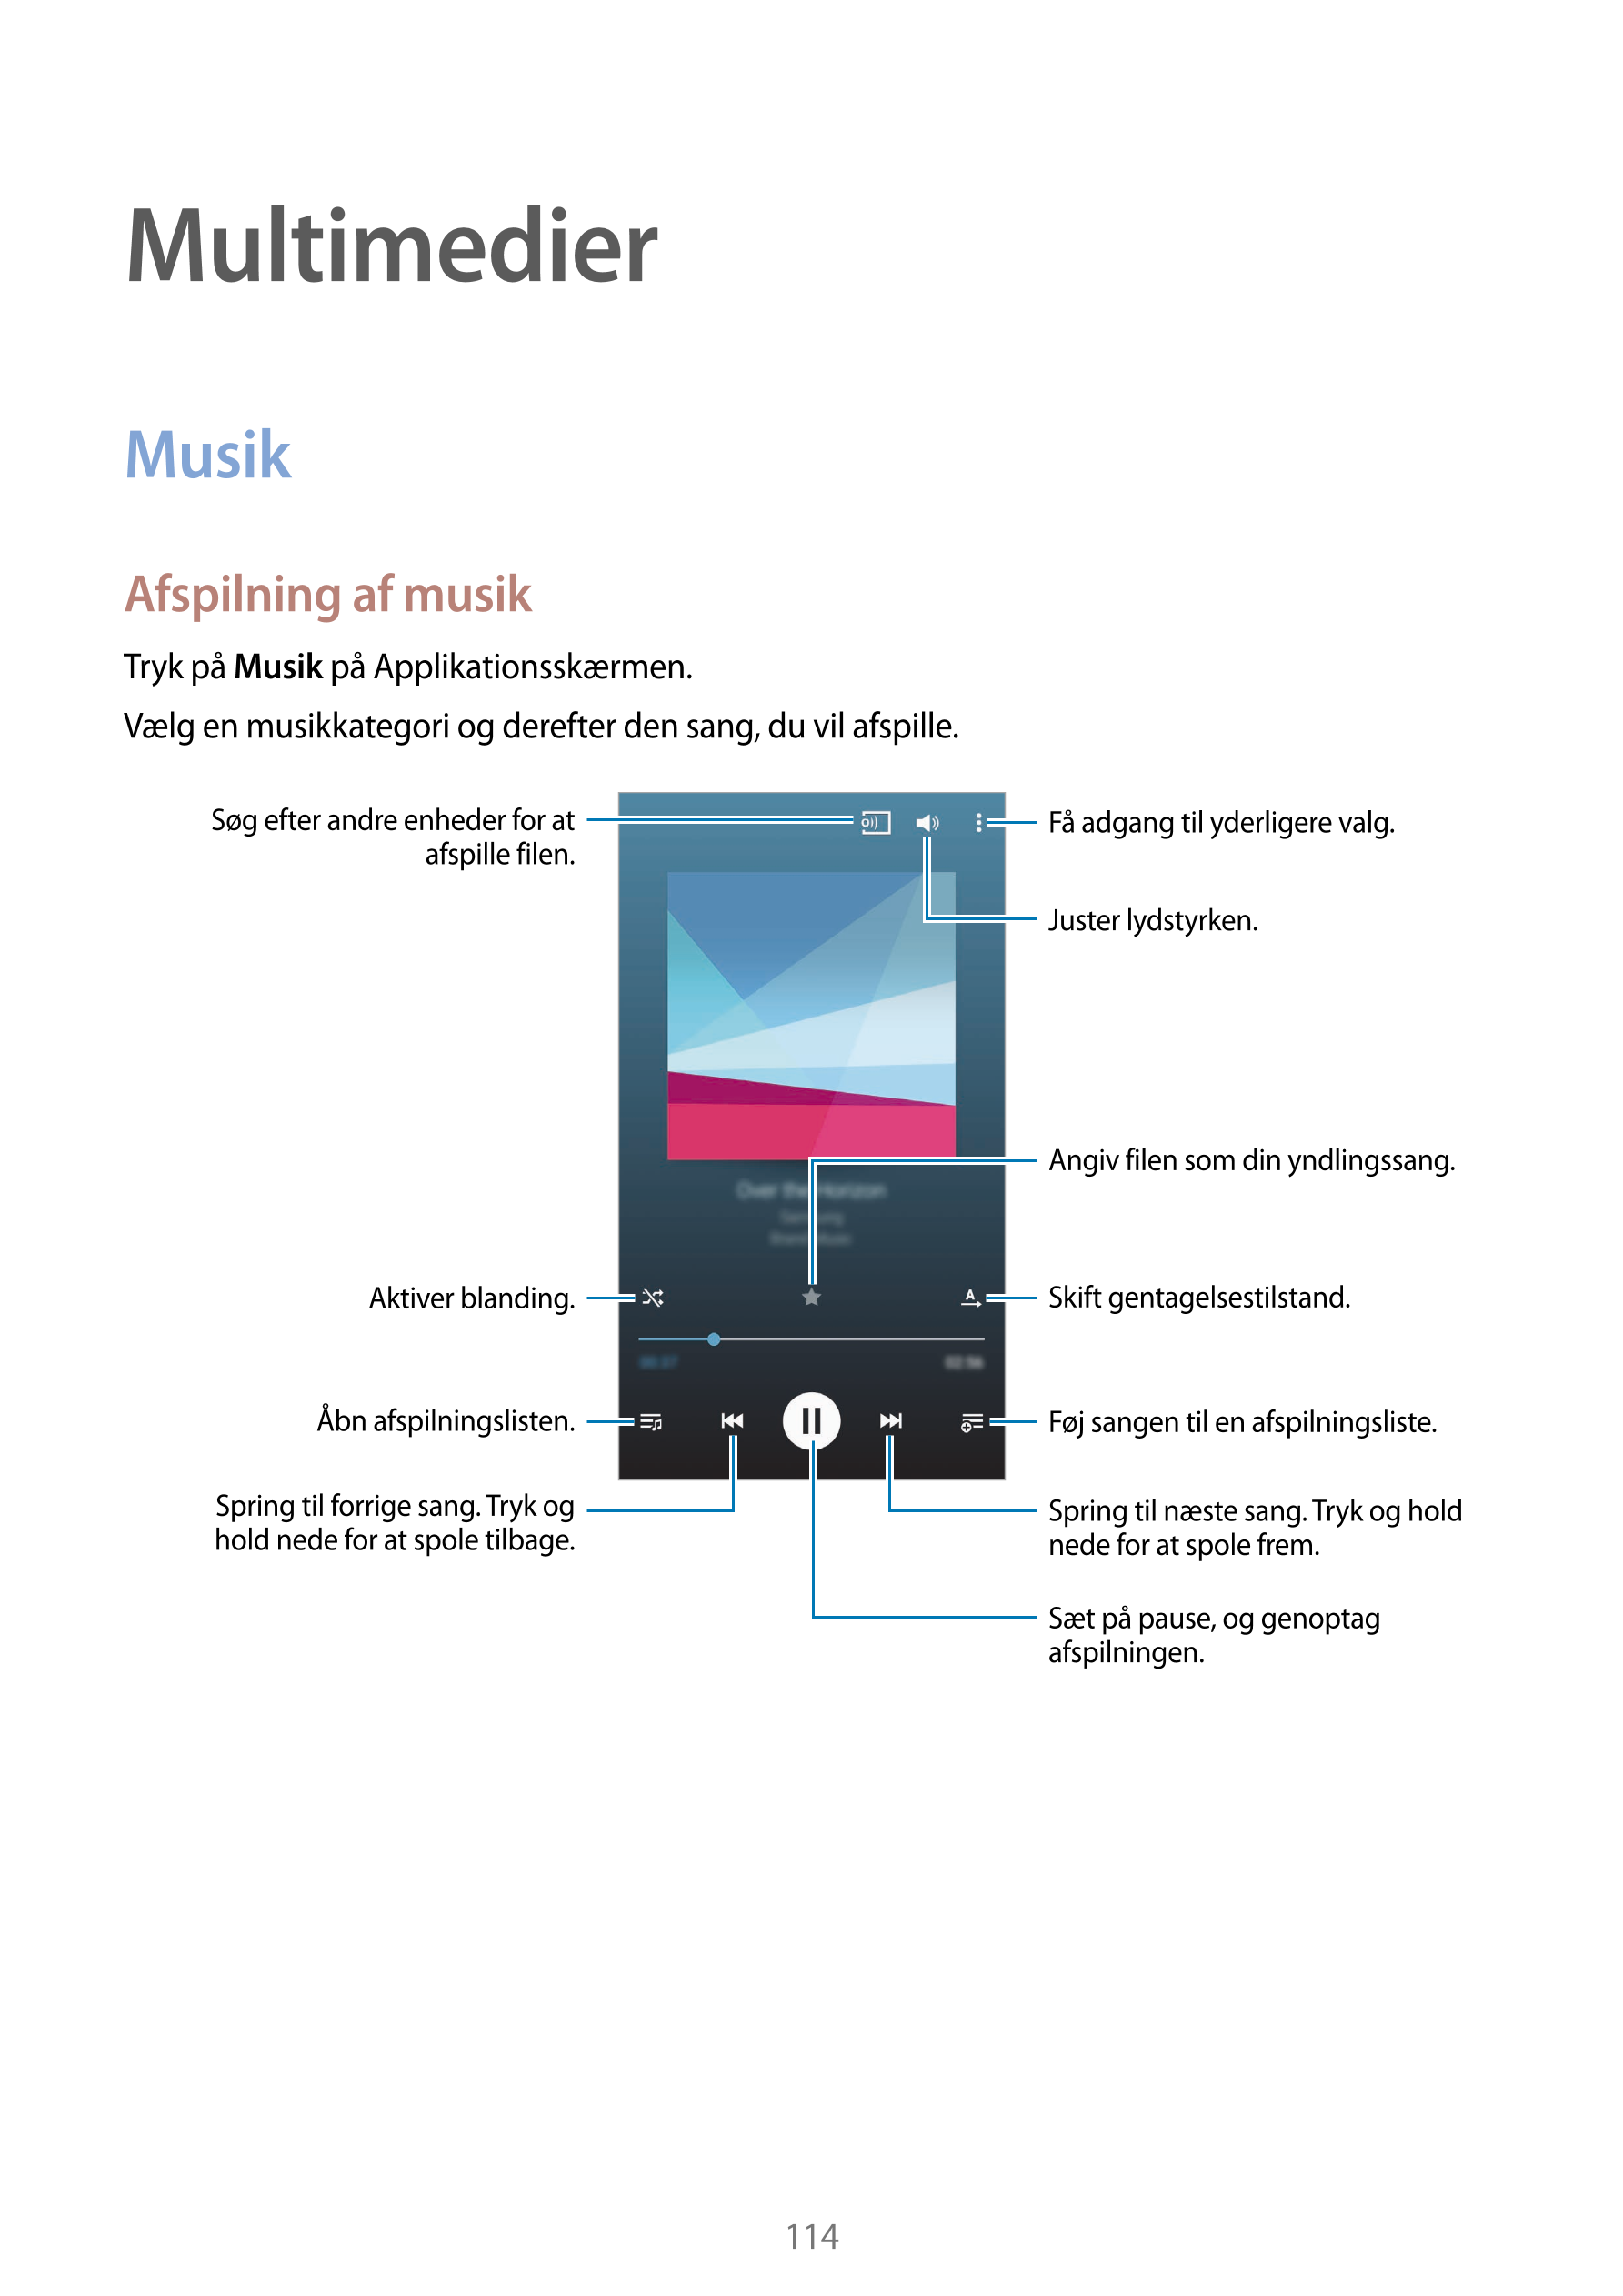 Multimedier
Musik
Afspilning af musik
Tryk på  Musik på Applikationsskærmen.
Vælg en musikkategori og derefter den sang, du vil 